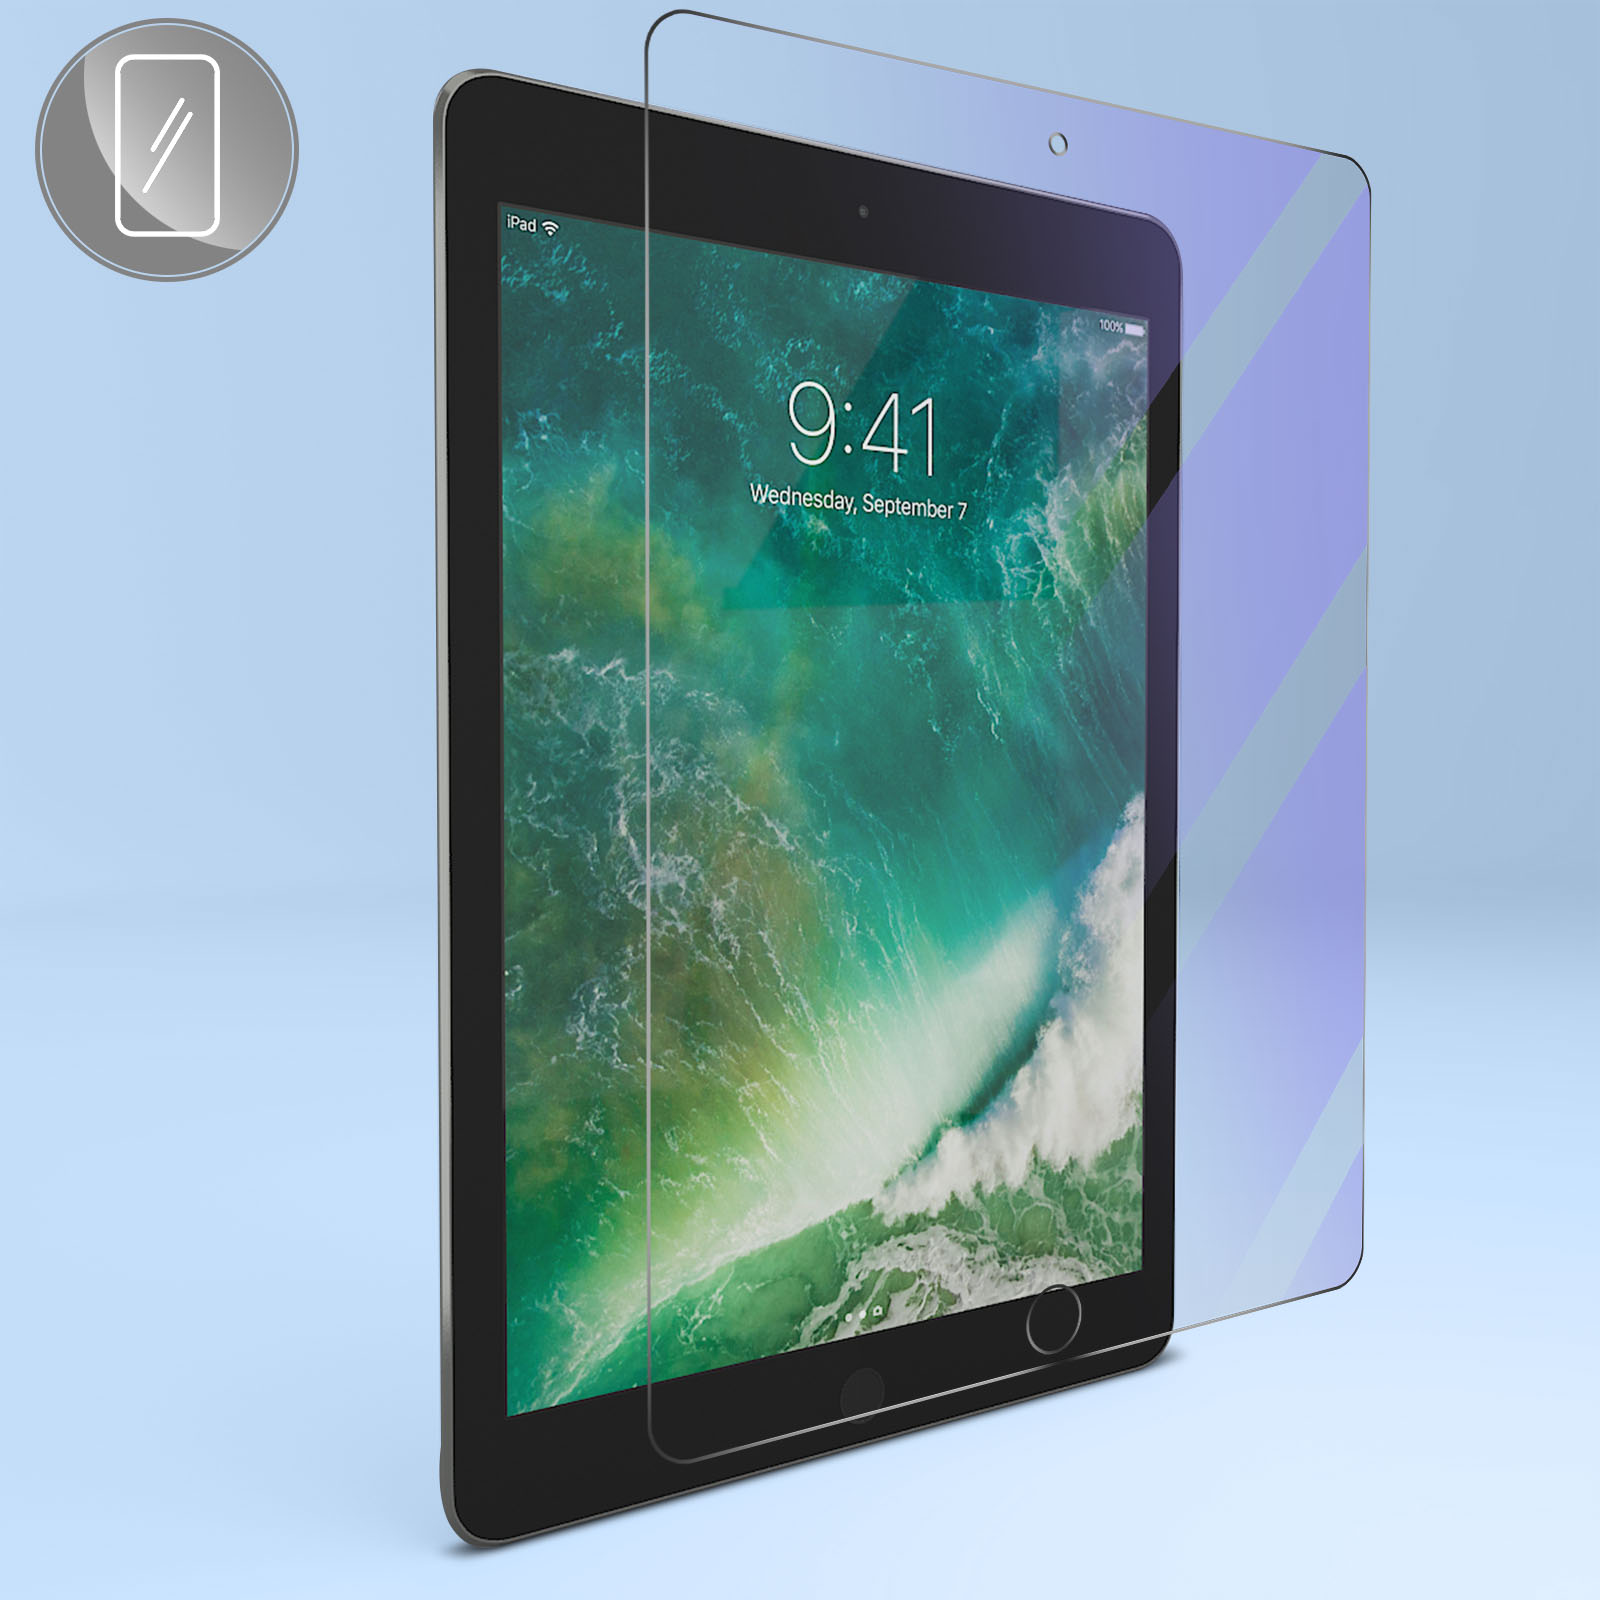 RongLe Marque protéger verre trempé pour iPad air- air 2